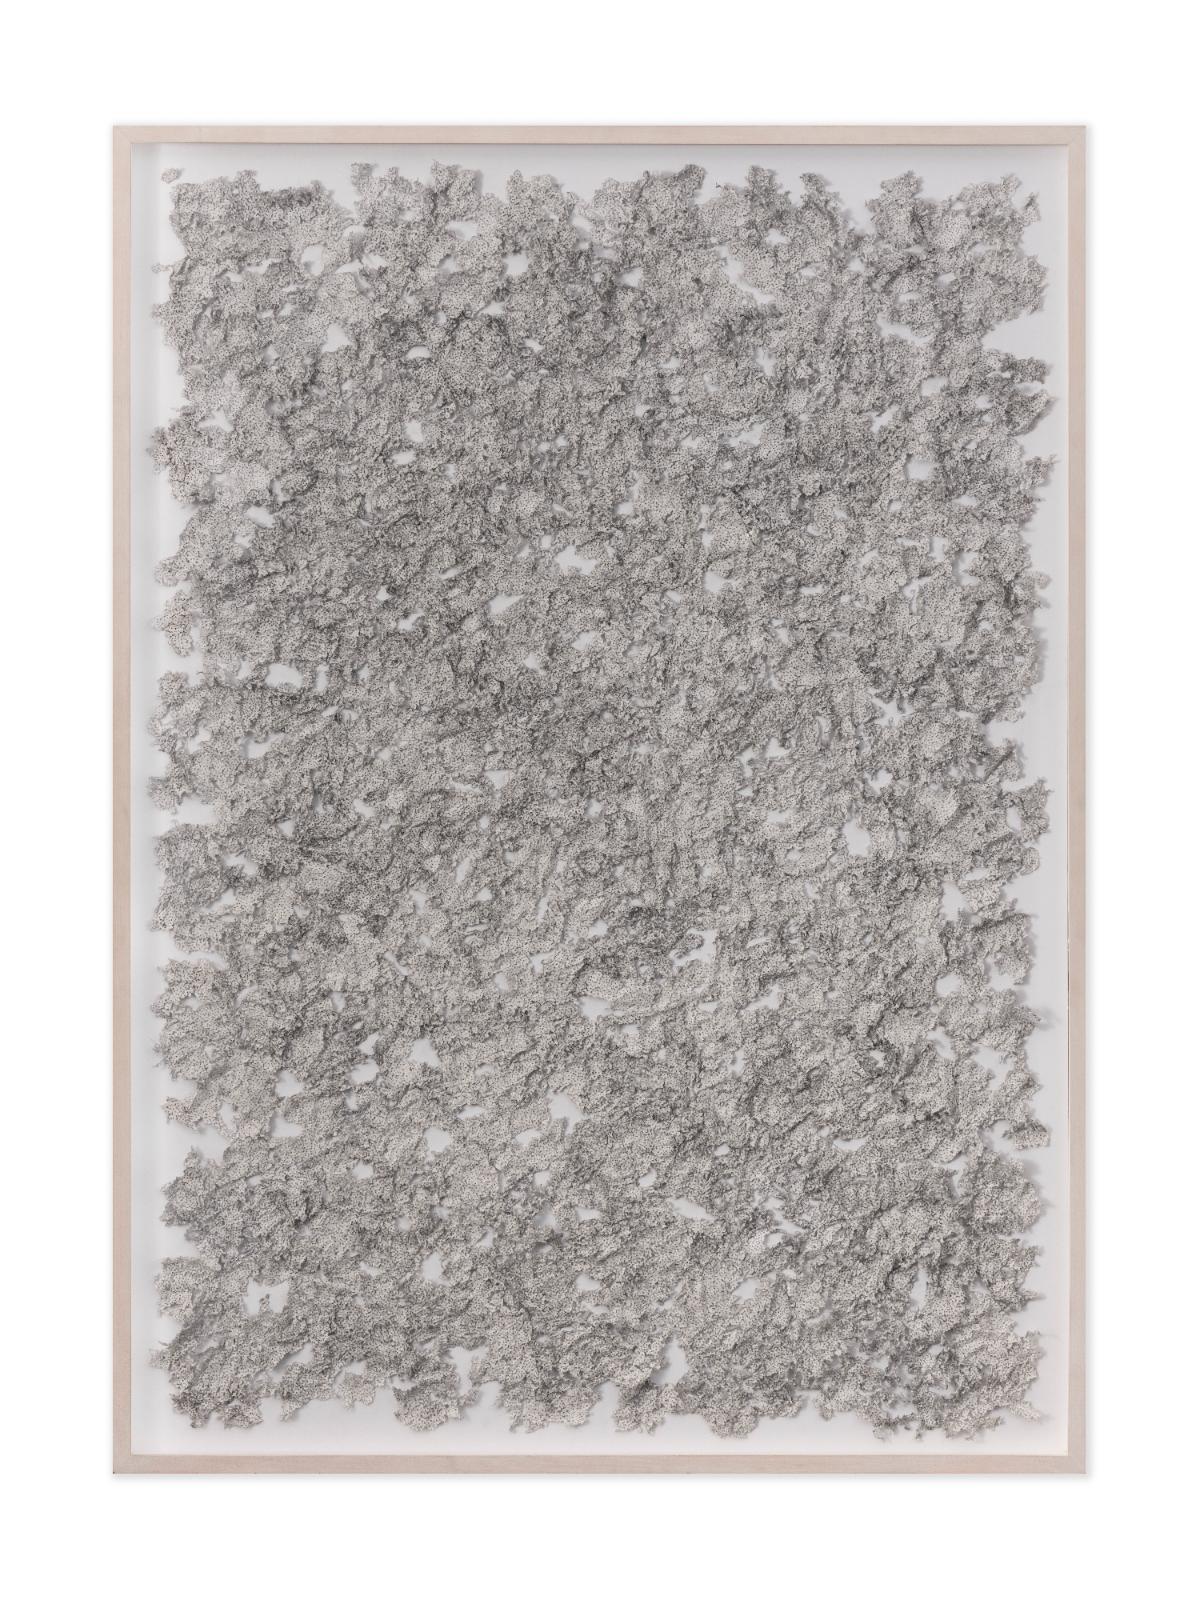 Martin Bruno Schmid, Bohrzeichnung, 2012, Bleistiftbohrung in Papier, 143 × 103 cm, Preis auf Anfrage